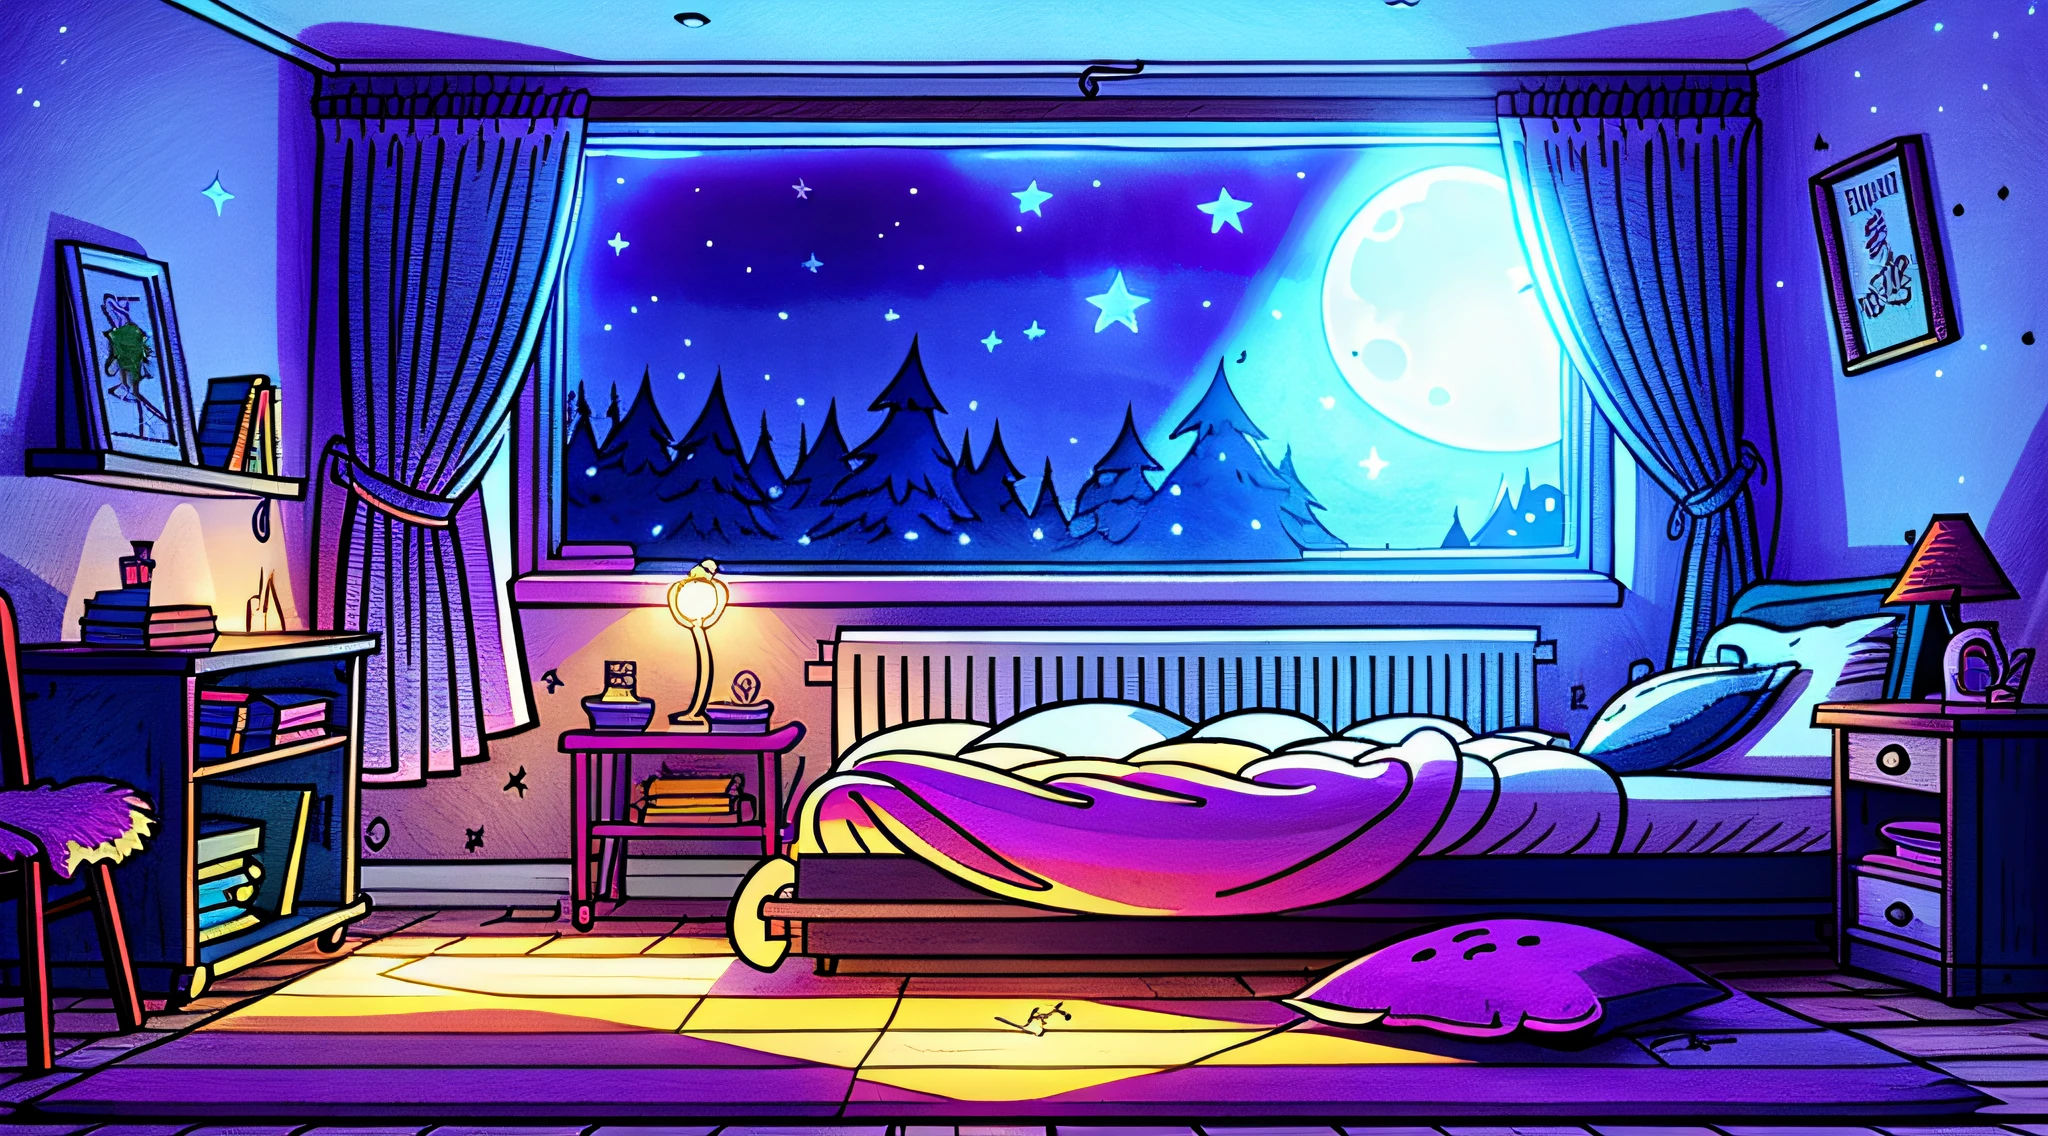 غرفة نوم مريحة في الليل, ضوء القمر يسطع من خلال النافذة, رسم توضيحي مفصل, كارتون, في أسلوب الجاذبية,